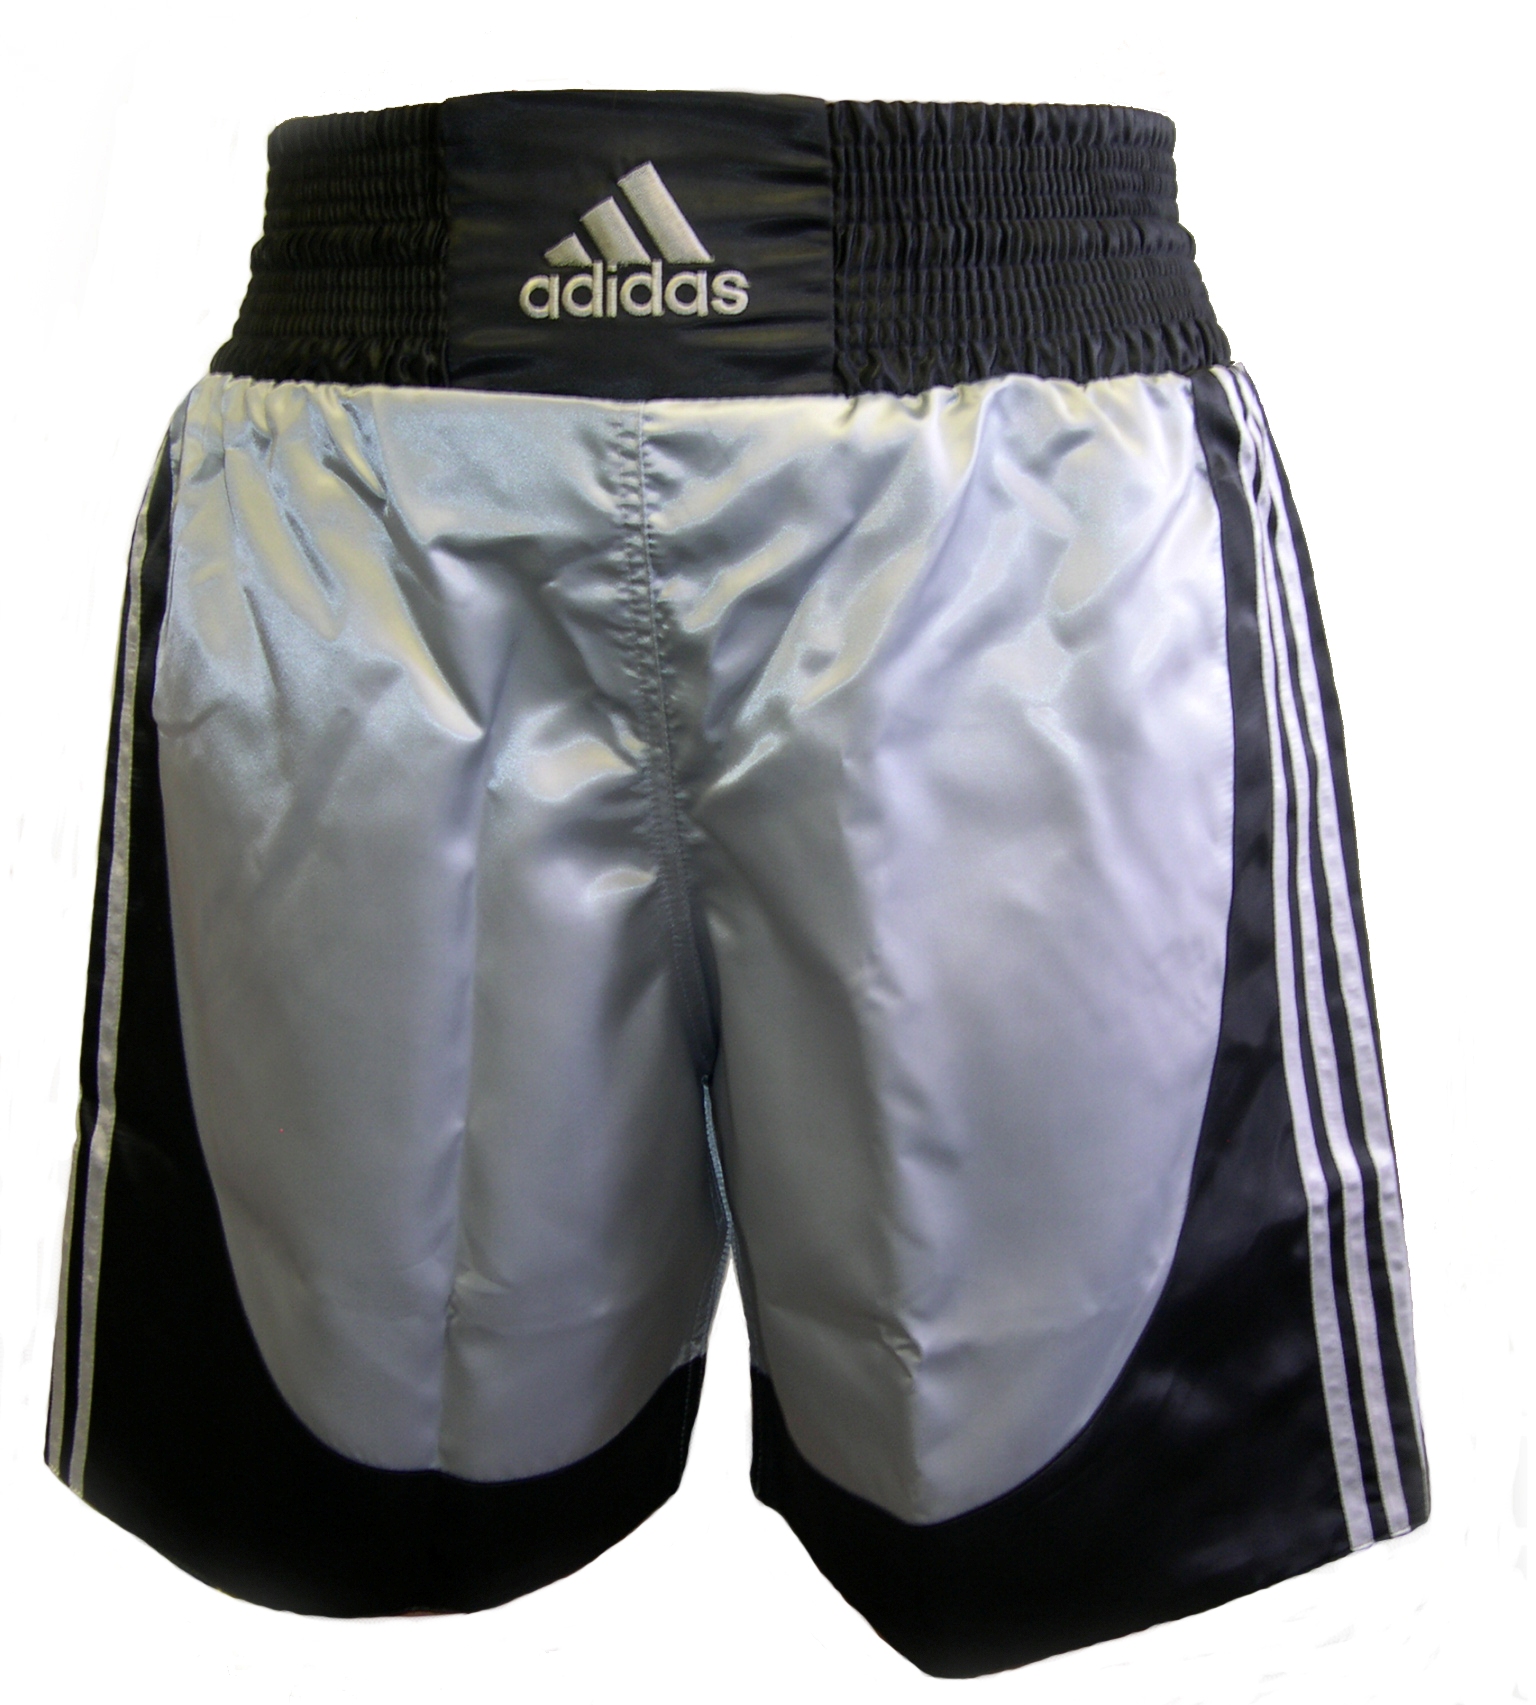 adidas boxing shorts